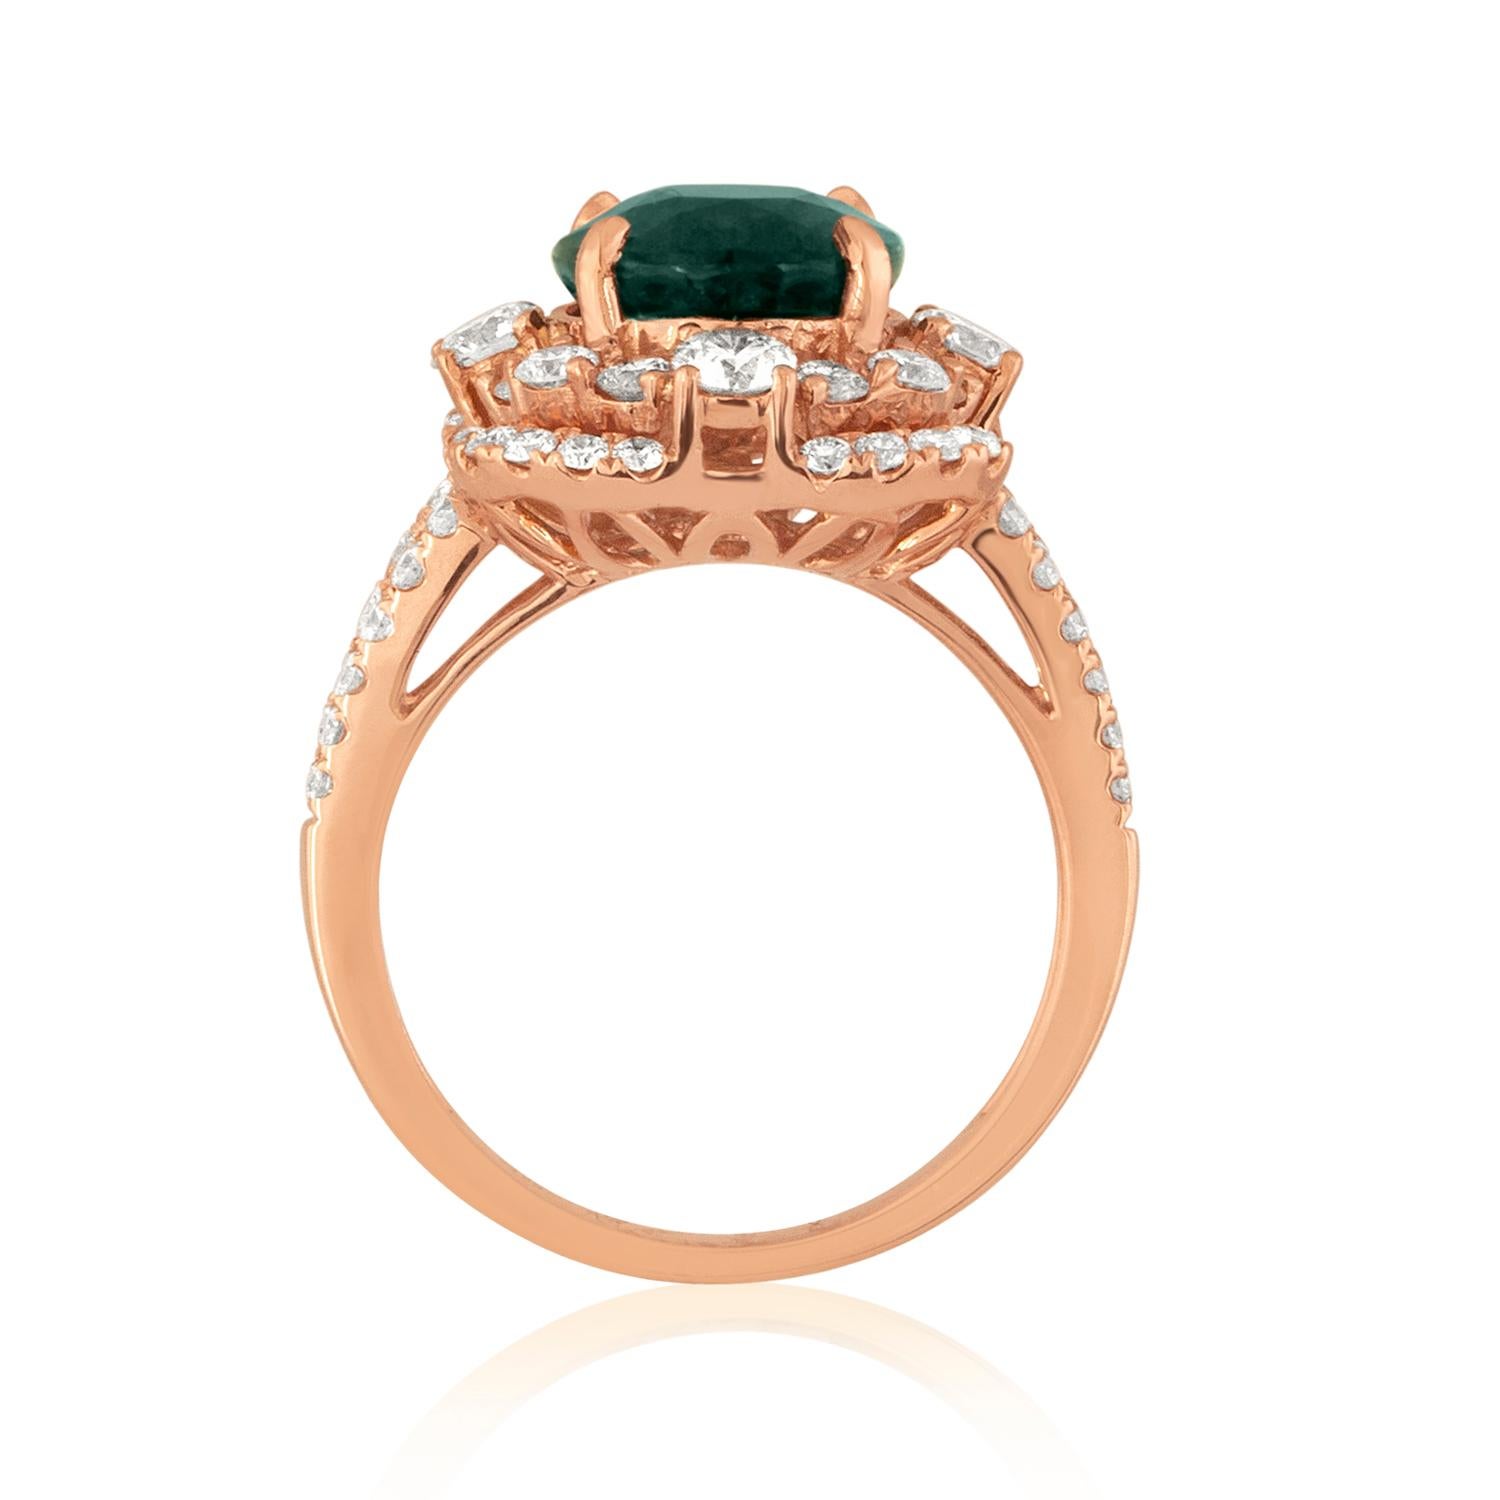 Einzigartiger Ring mit Saphir und Diamant.
Der Ring ist 18K Rose Gold
Es sind 1,47 Karat in Diamanten F/G VS
Der Mittelstein ist ein 4,88 Karat AGL zertifizierter ovaler Saphir.
Der Saphir ist bräunlich grün-blau NO HEAT.
Der Ring ist eine Größe